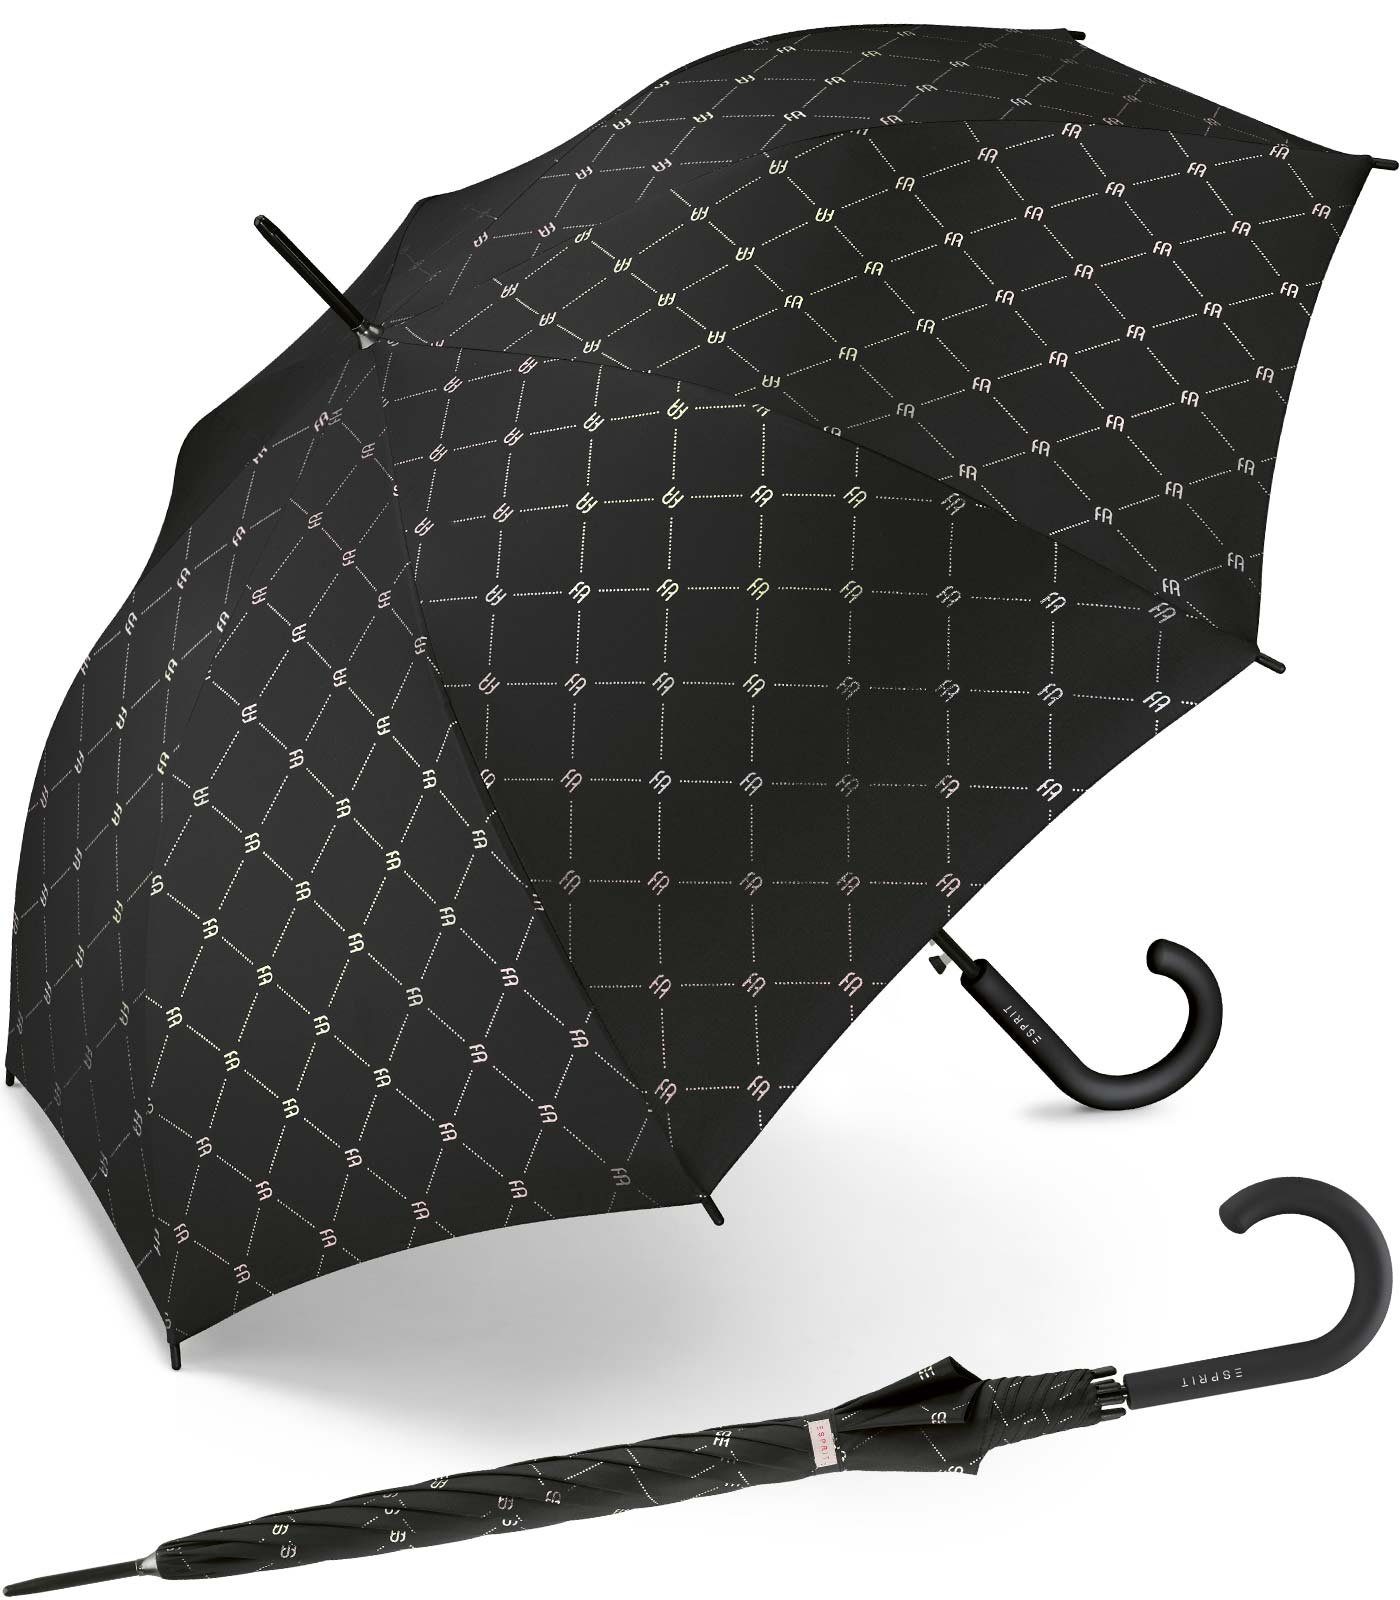 Esprit Langregenschirm großer Regenschirm für Damen mit Auf-Automatik, klassisches Design in modischem Design